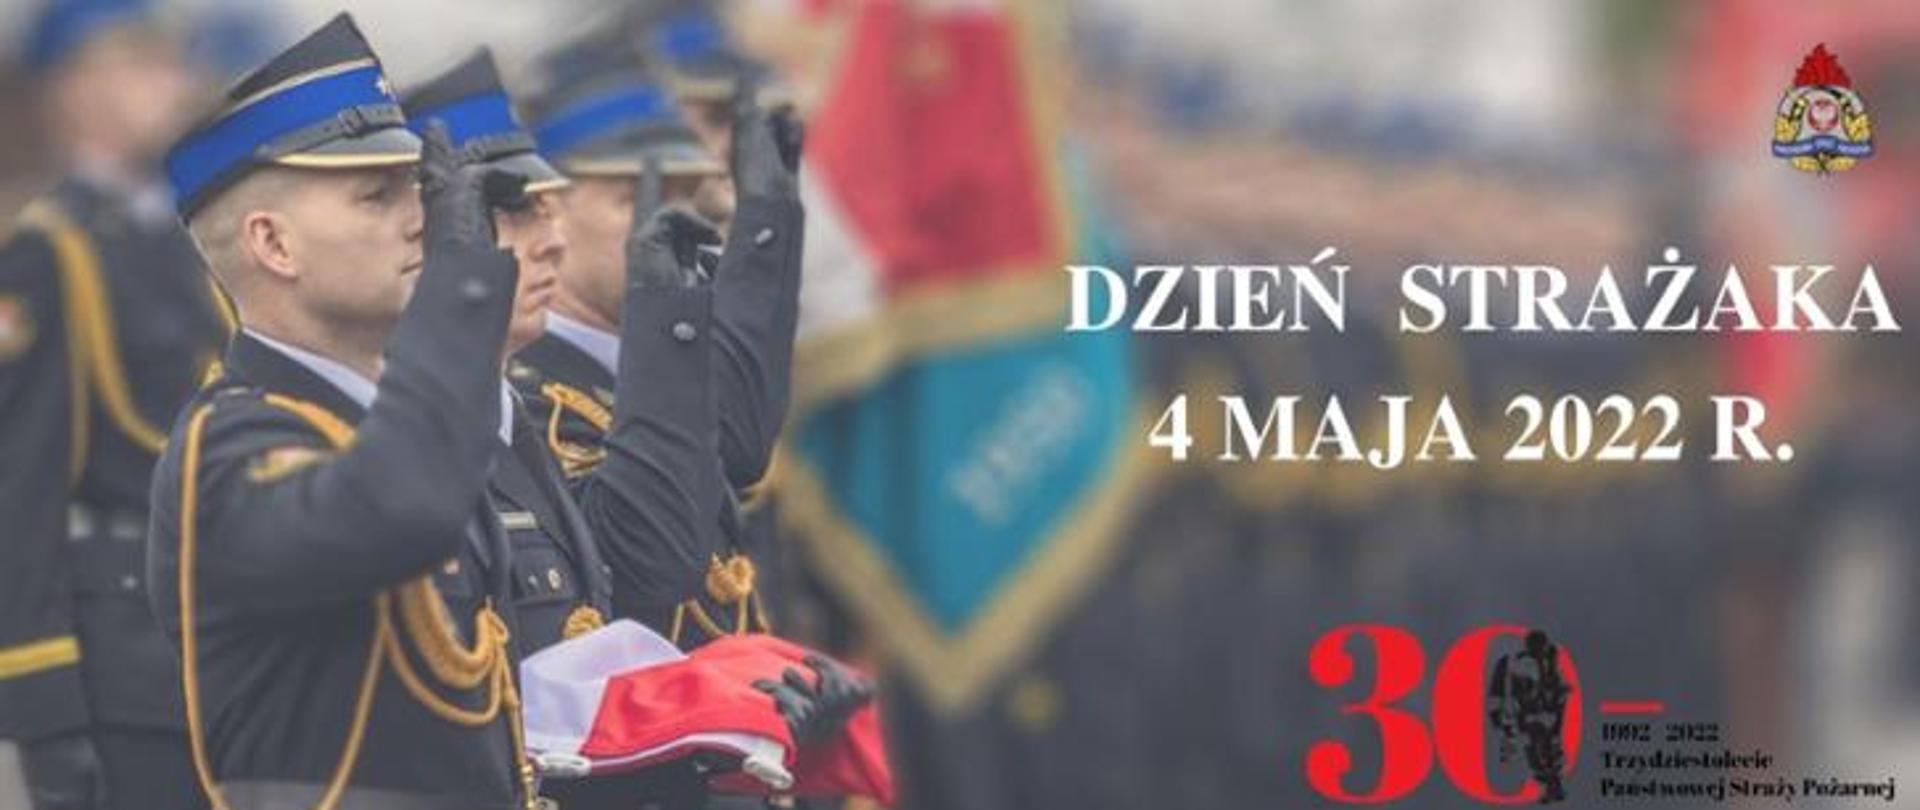 Trzech strażaków w galowych mundurach salutuje. Obok logo PSP i napis Dzień Strażaka 4 maja 2022 r.